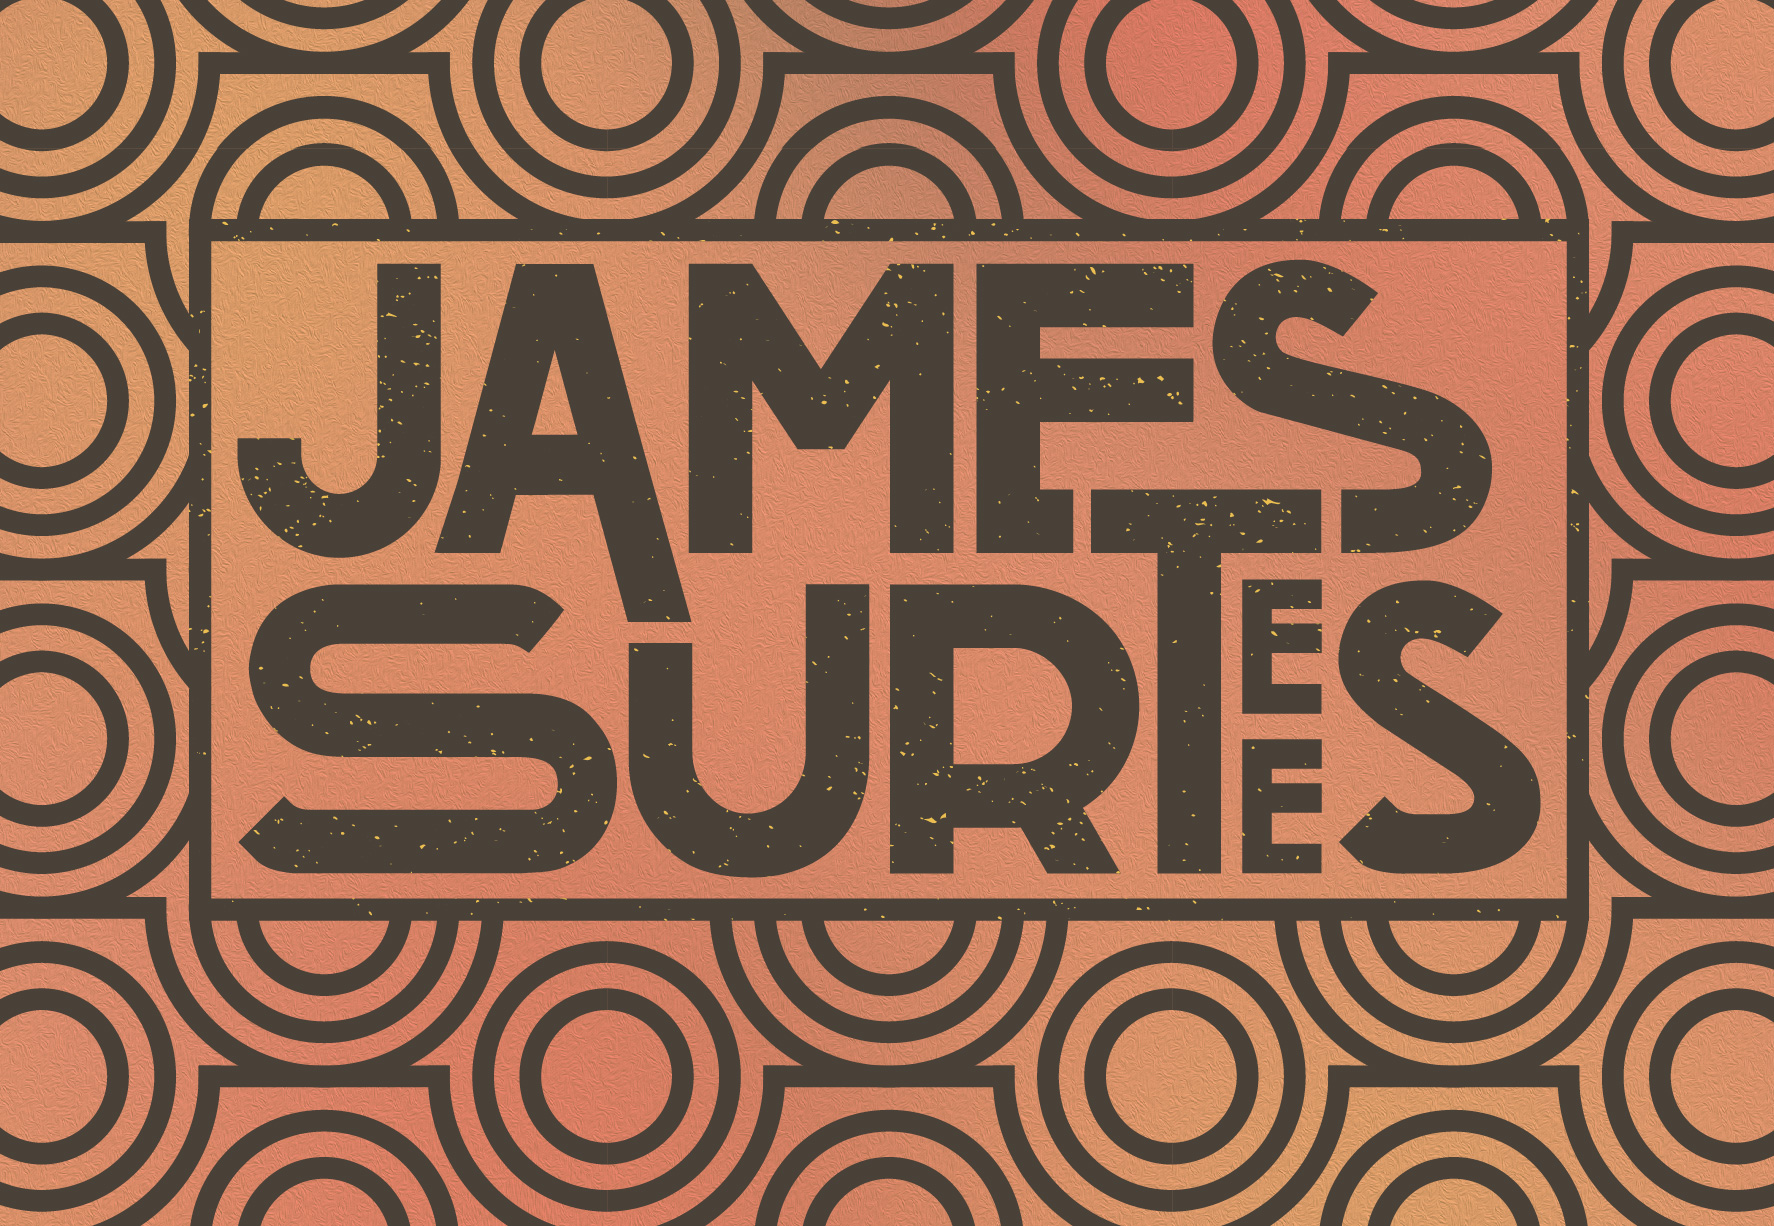 James Surtees